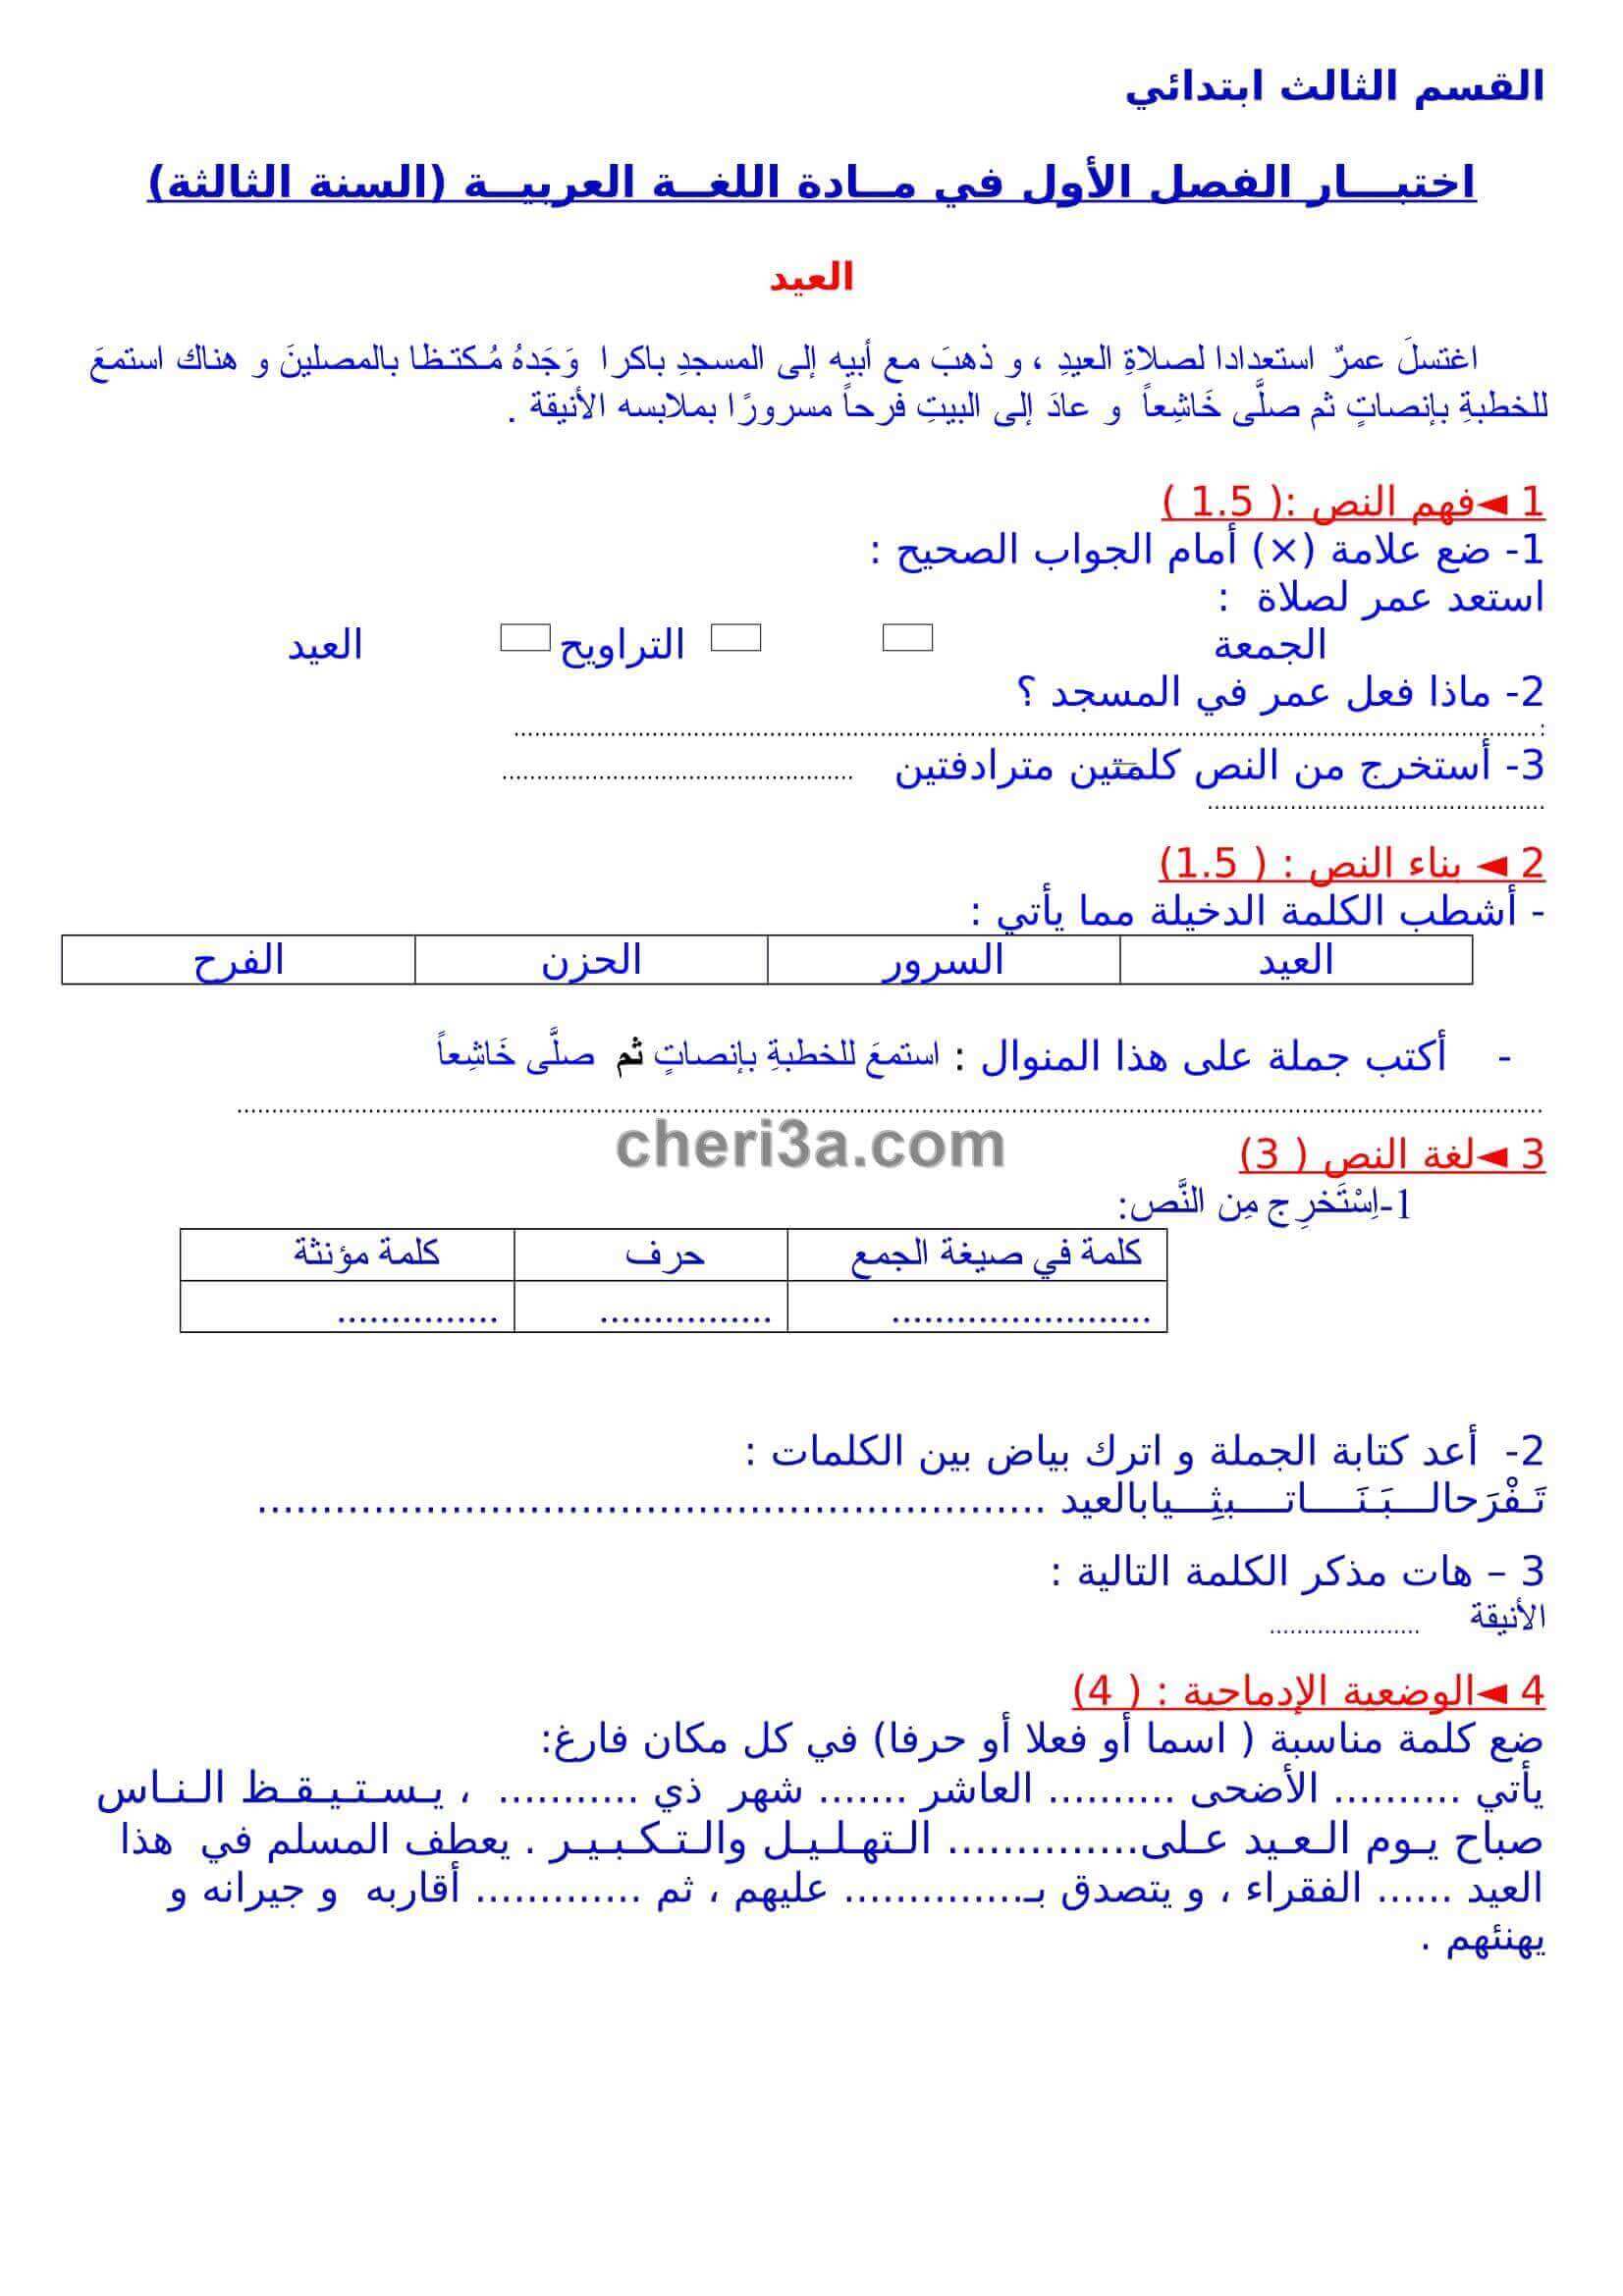 اختبار الفصل الاول للسنة الثالثة ابتدائي في مادة اللغة العربية